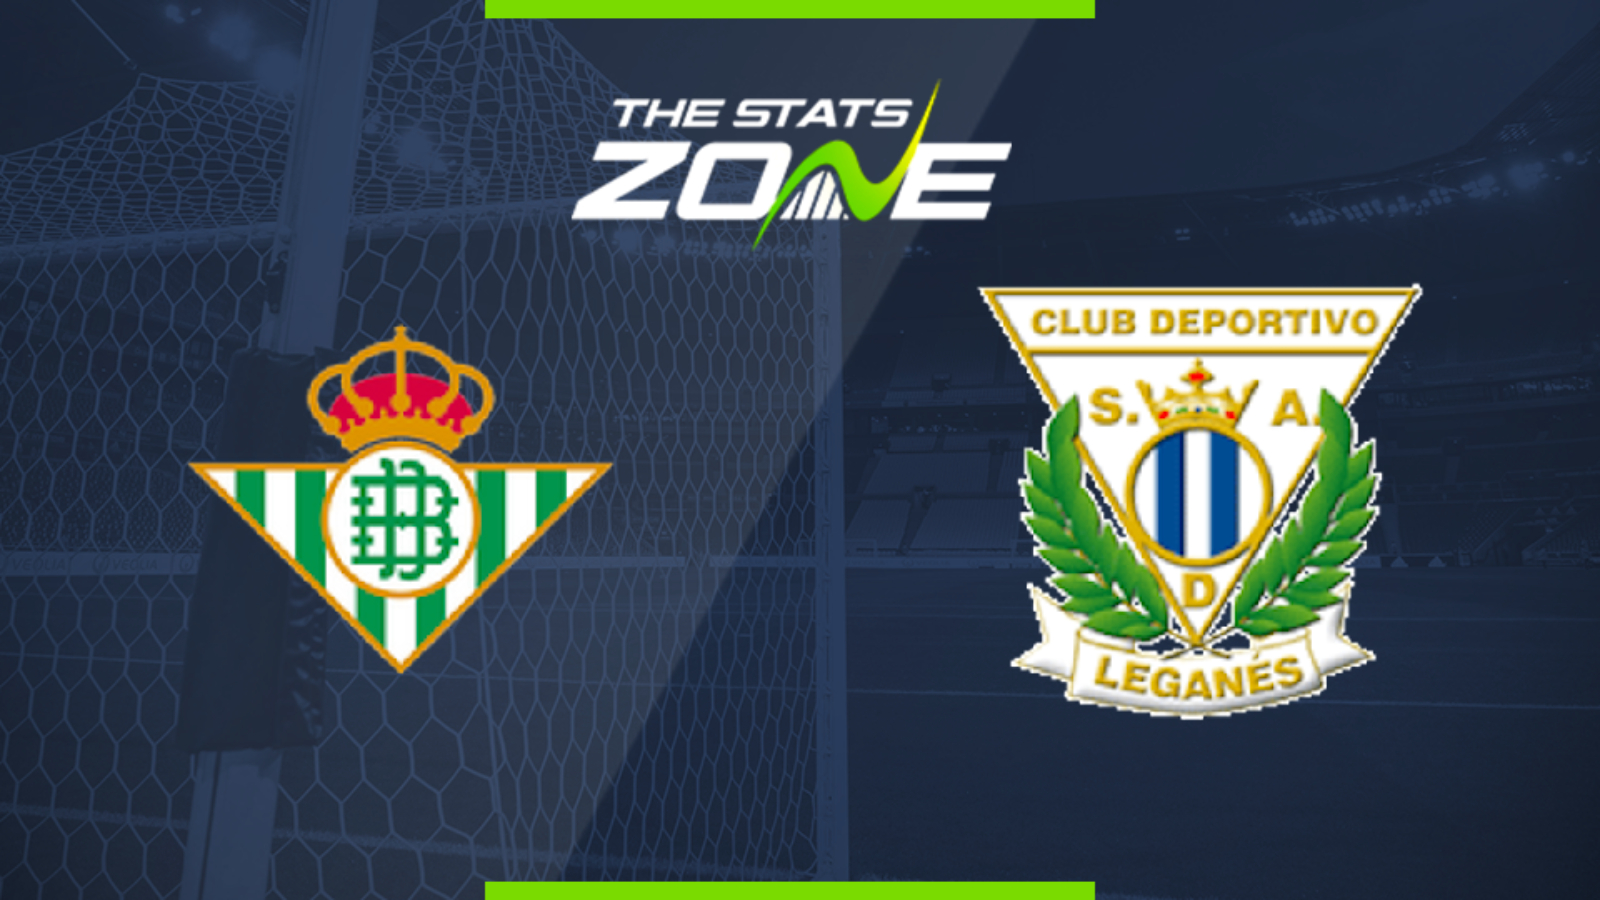 2019-20 Spanish Primera - Real Betis vs Leganes Preview & Prediction - The Stats Zone